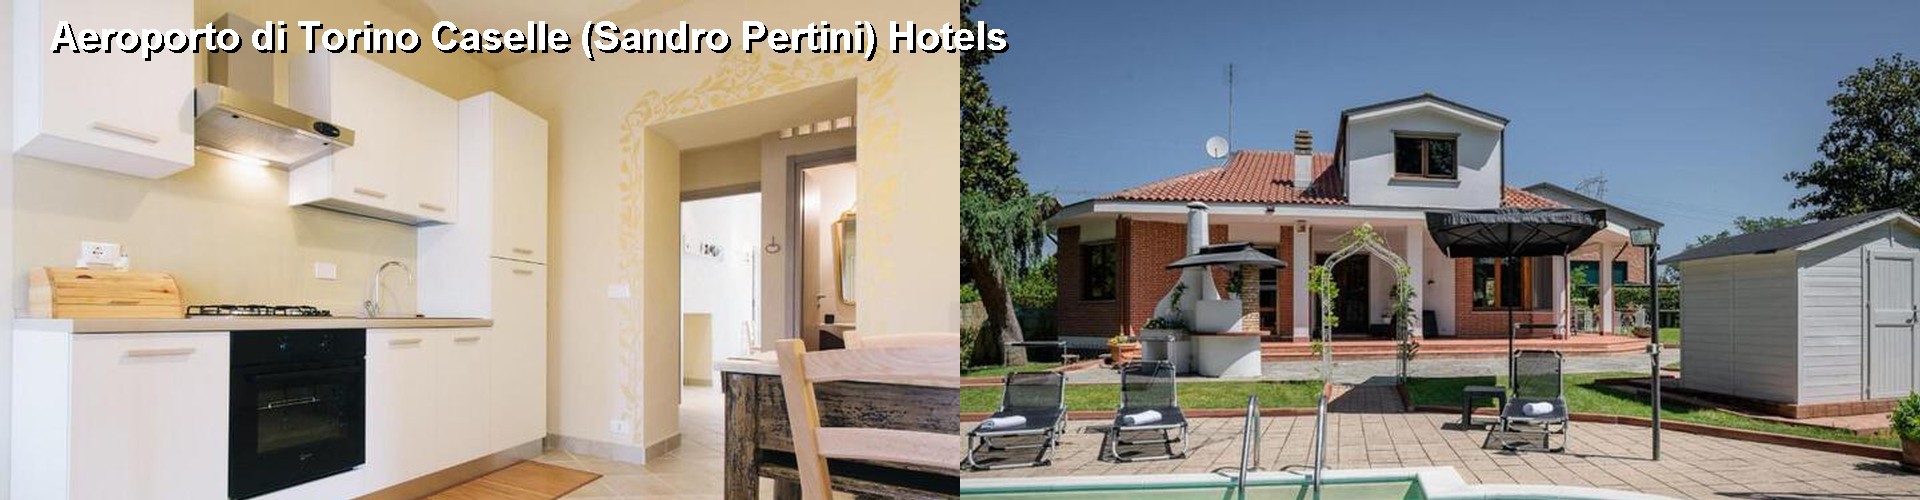 5 Best Hotels near Aeroporto di Torino Caselle (Sandro Pertini)